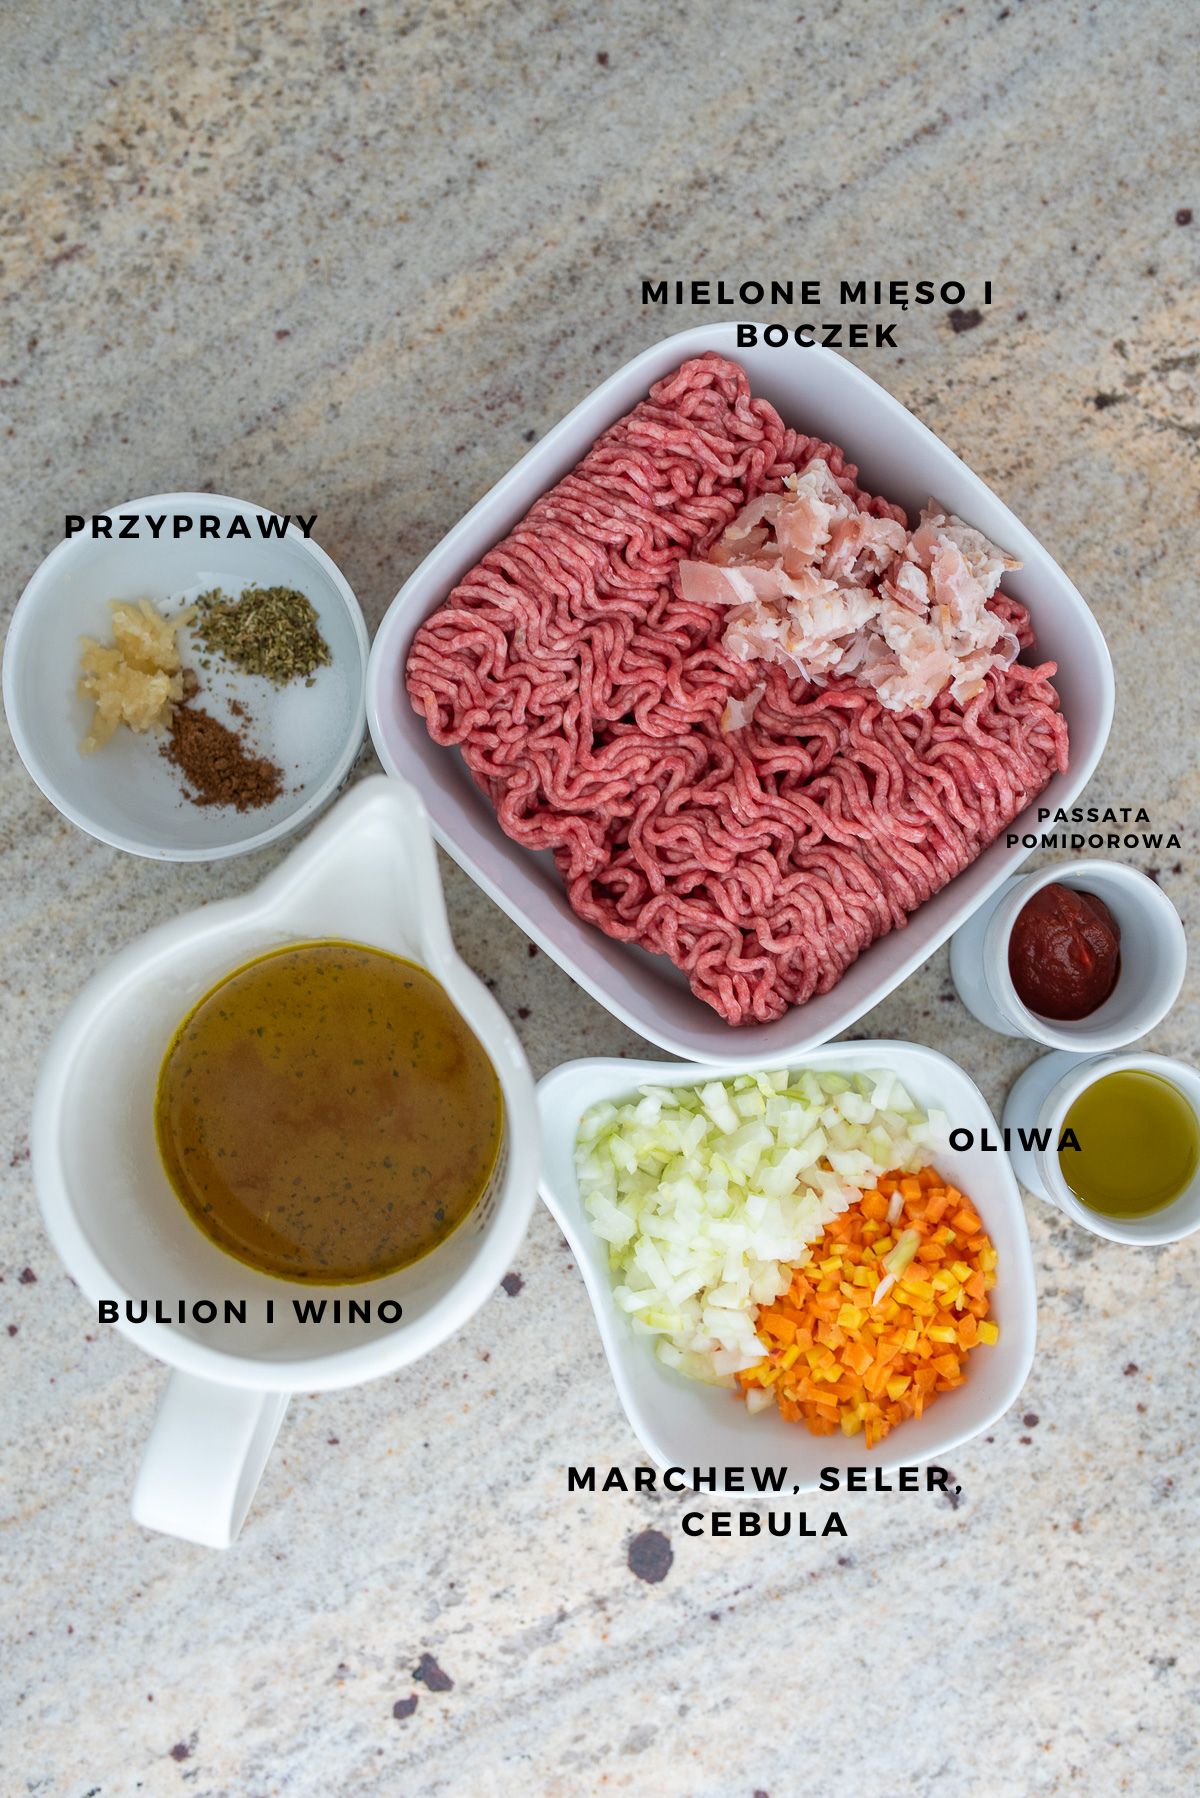 składniki na sos mięsny do lasagne pokazane w pojemniczkach ustawionych na blaci